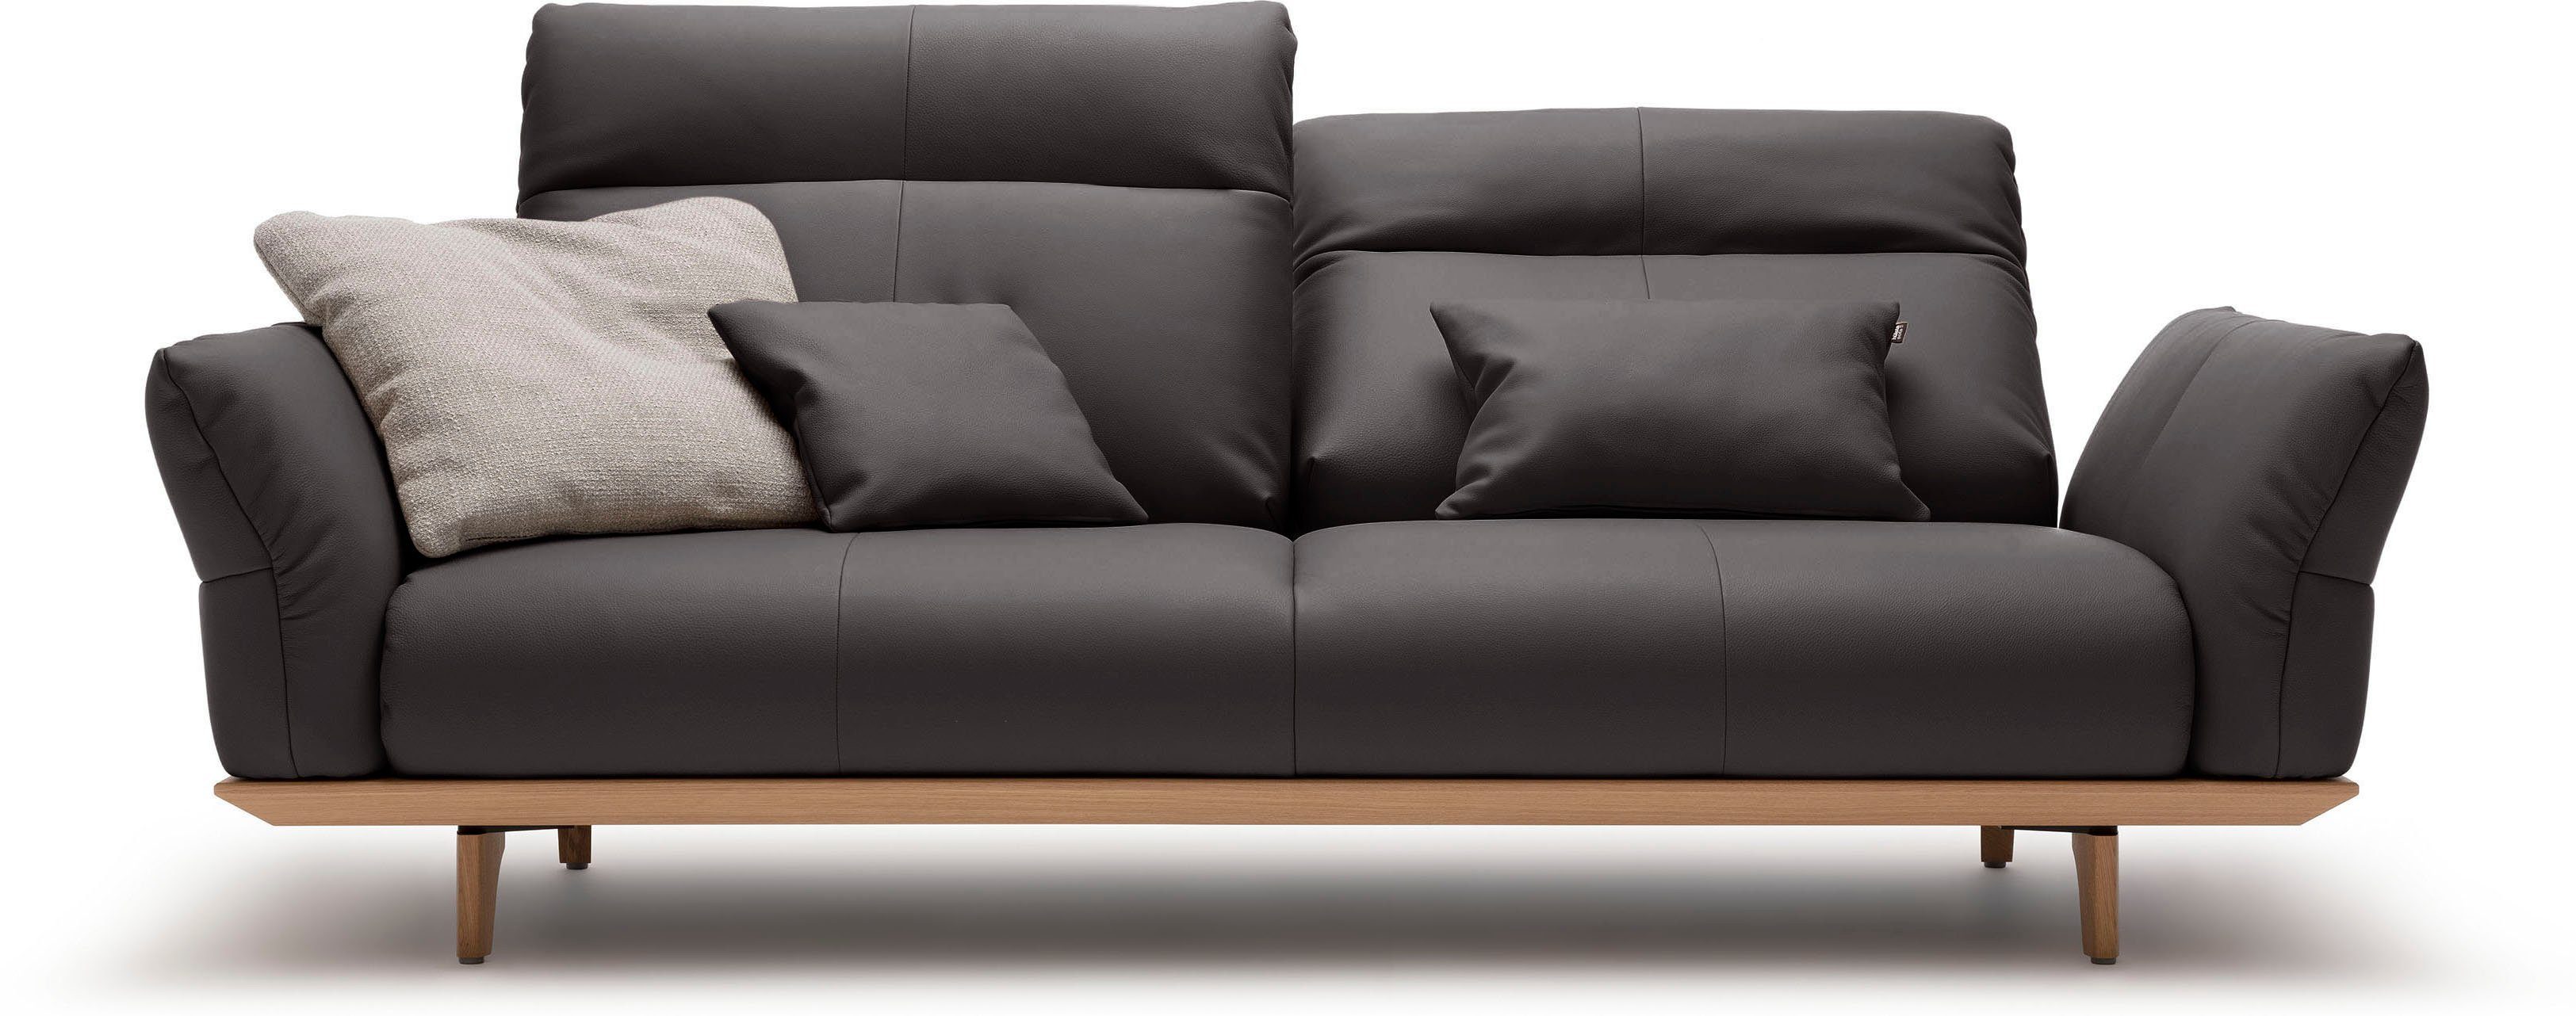 sofa hülsta 3-Sitzer natur, Eiche, Füße hs.460, 208 cm Eiche Breite Sockel in